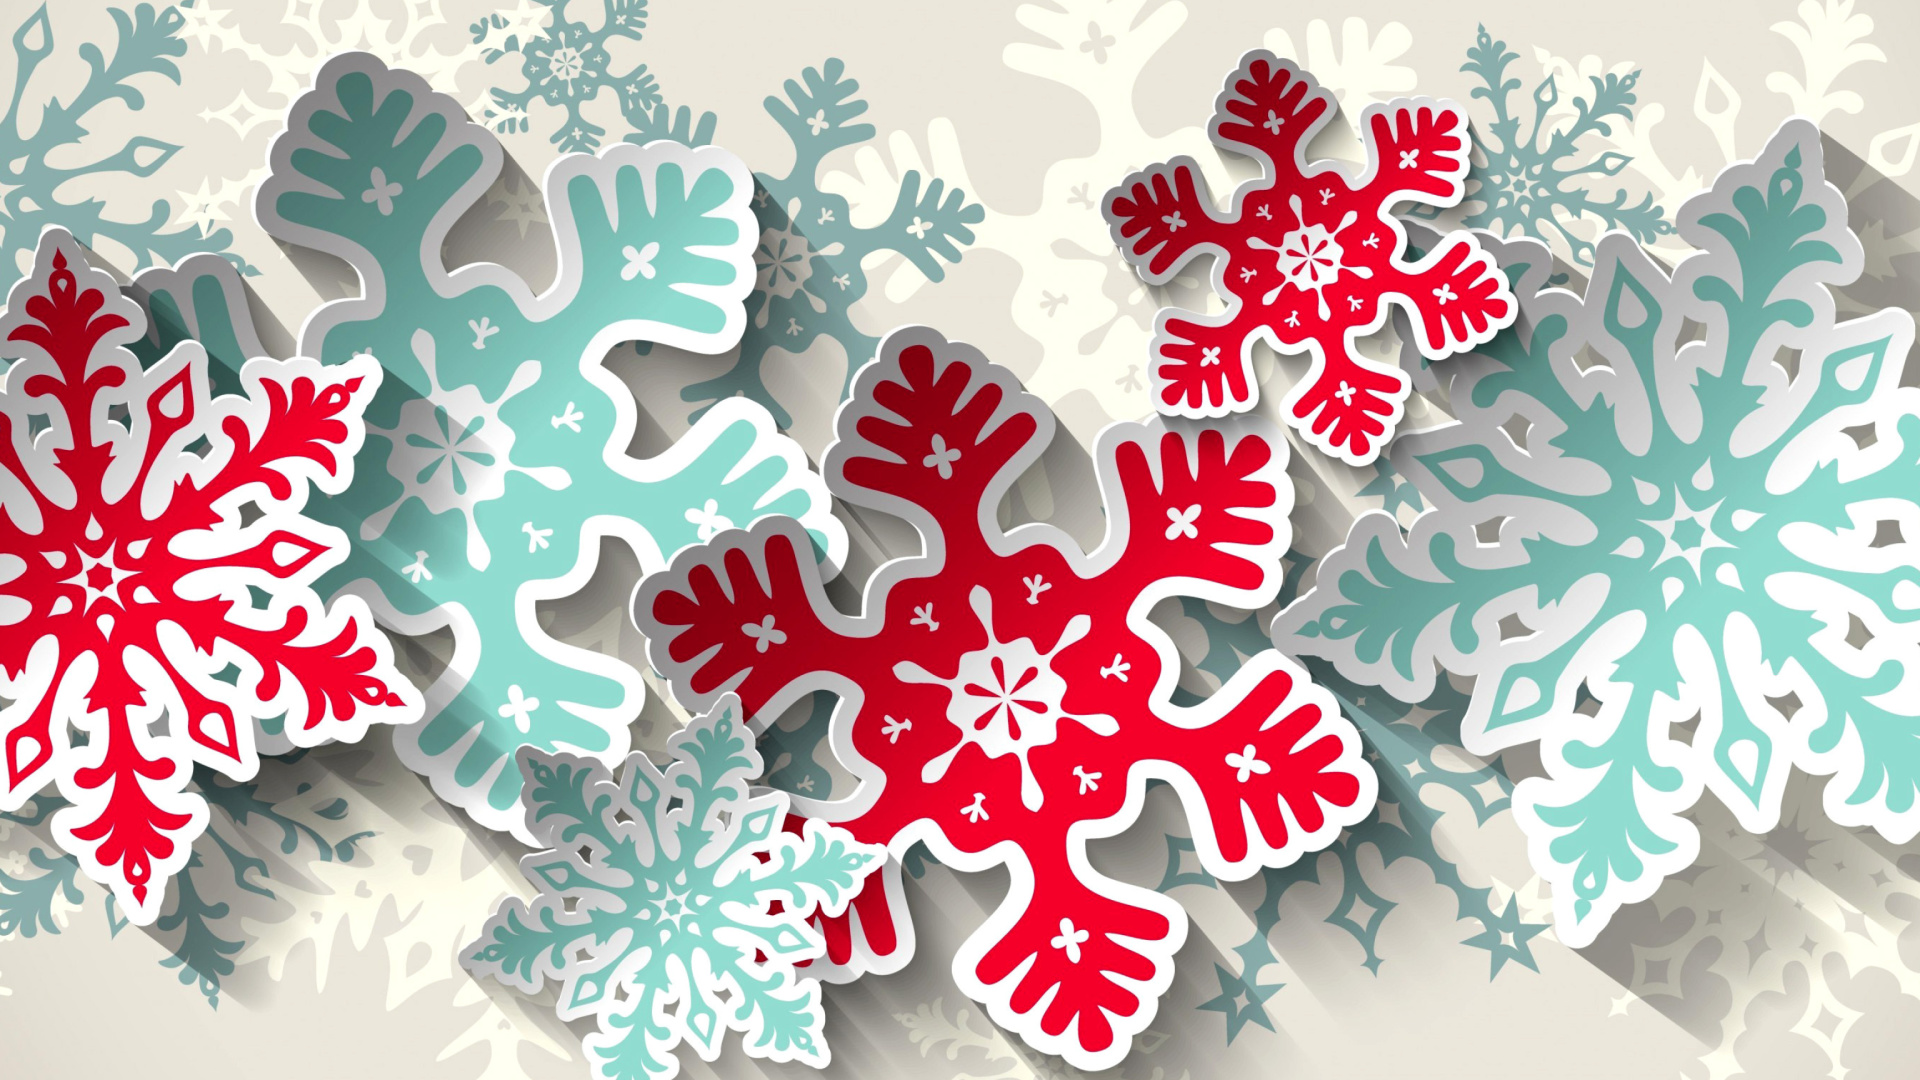 Das Snowflakes Decoration Wallpaper 1920x1080